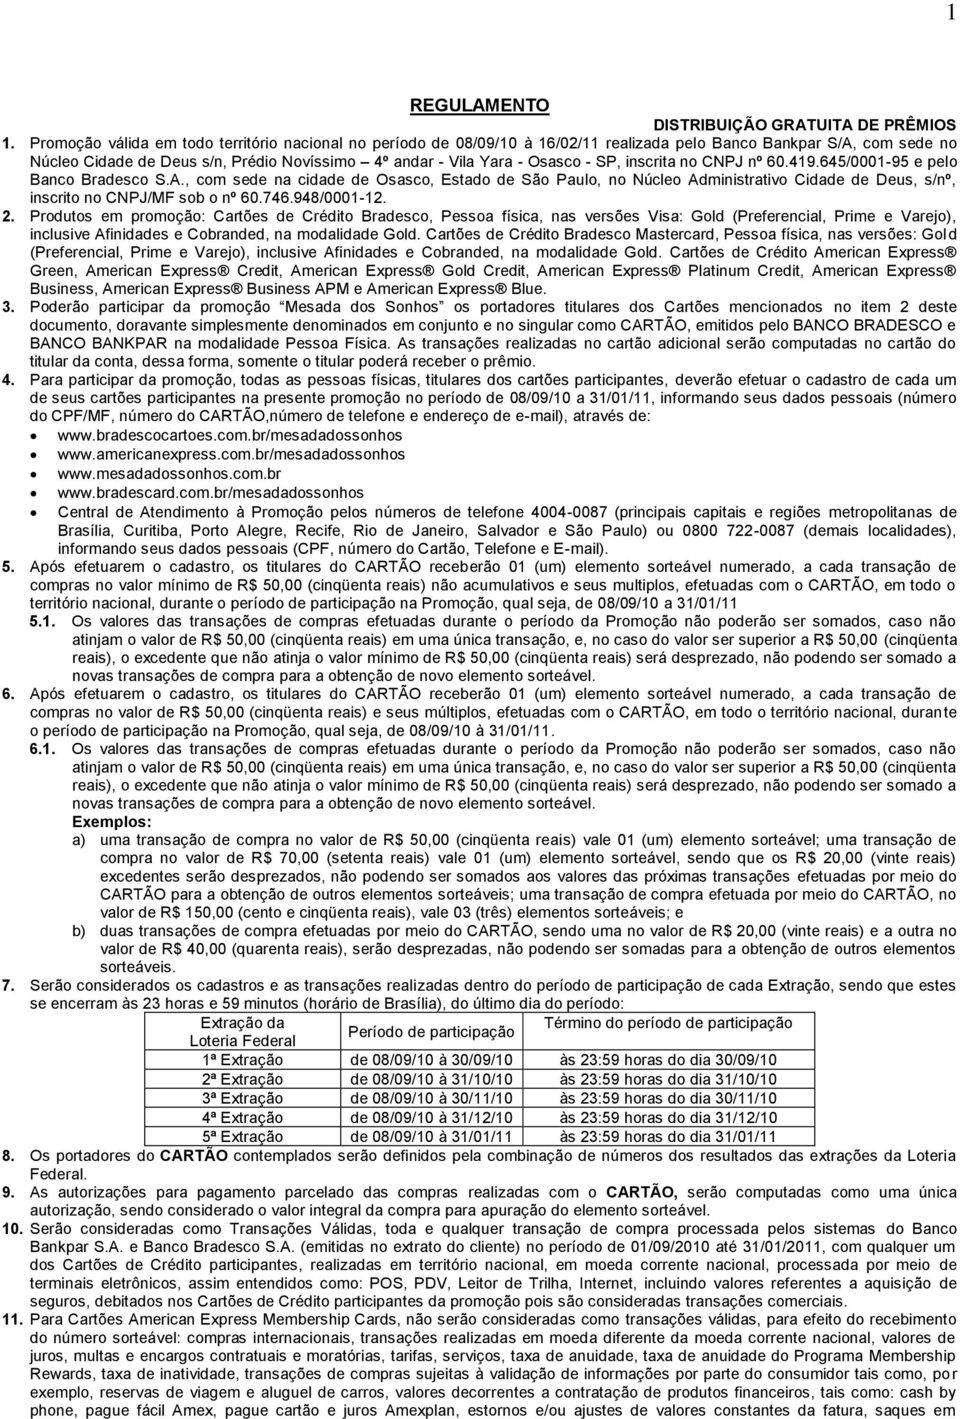 SP, inscrita no CNPJ nº 60.419.645/0001-95 e pelo Banco Bradesco S.A.